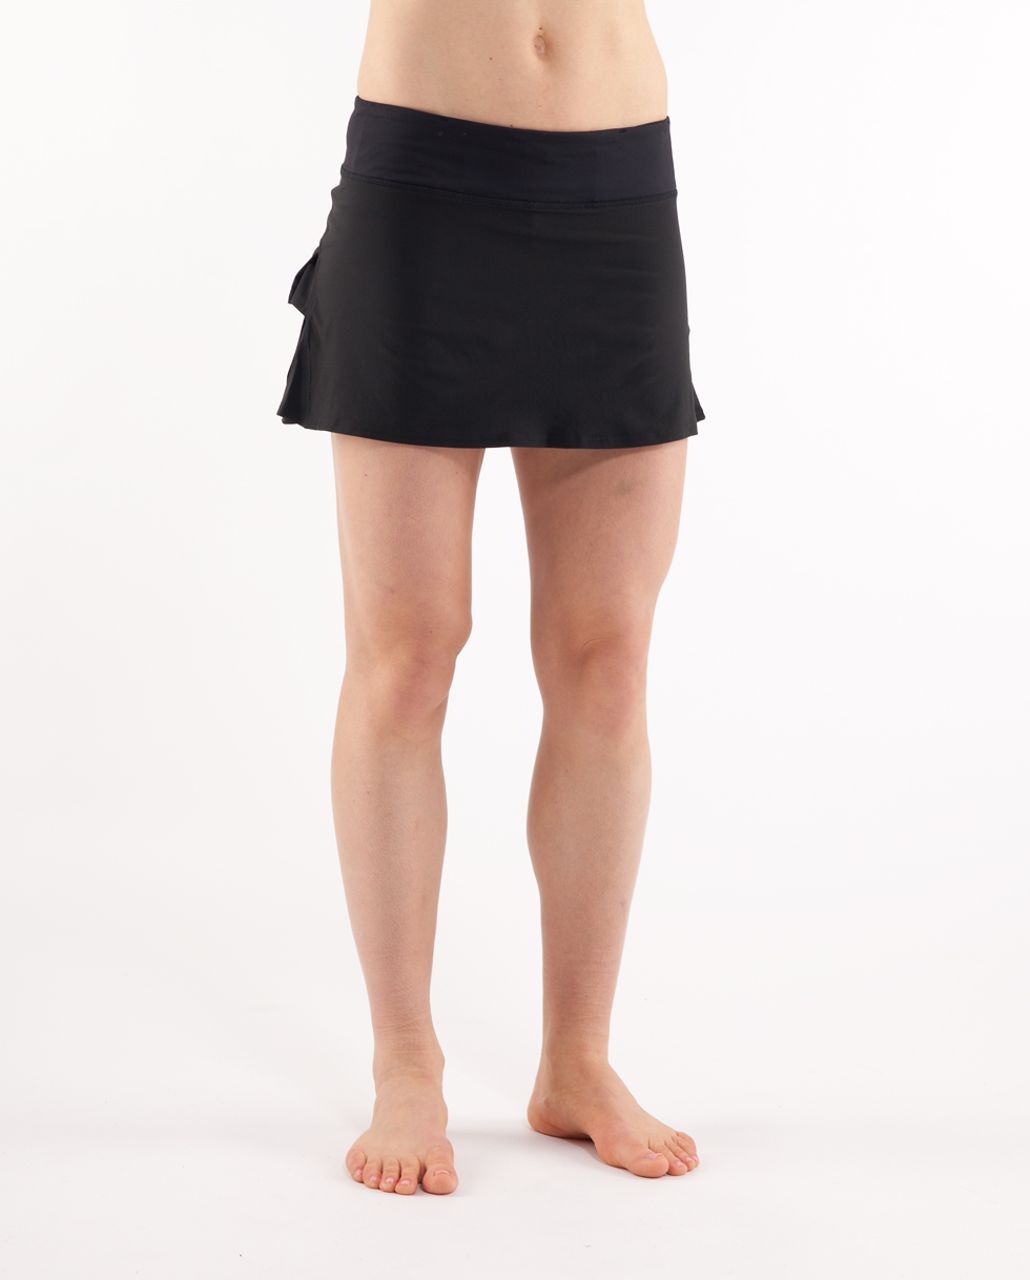 Lululemon Pace Setter Black Athletic Tennis Skirt Skort Women Size